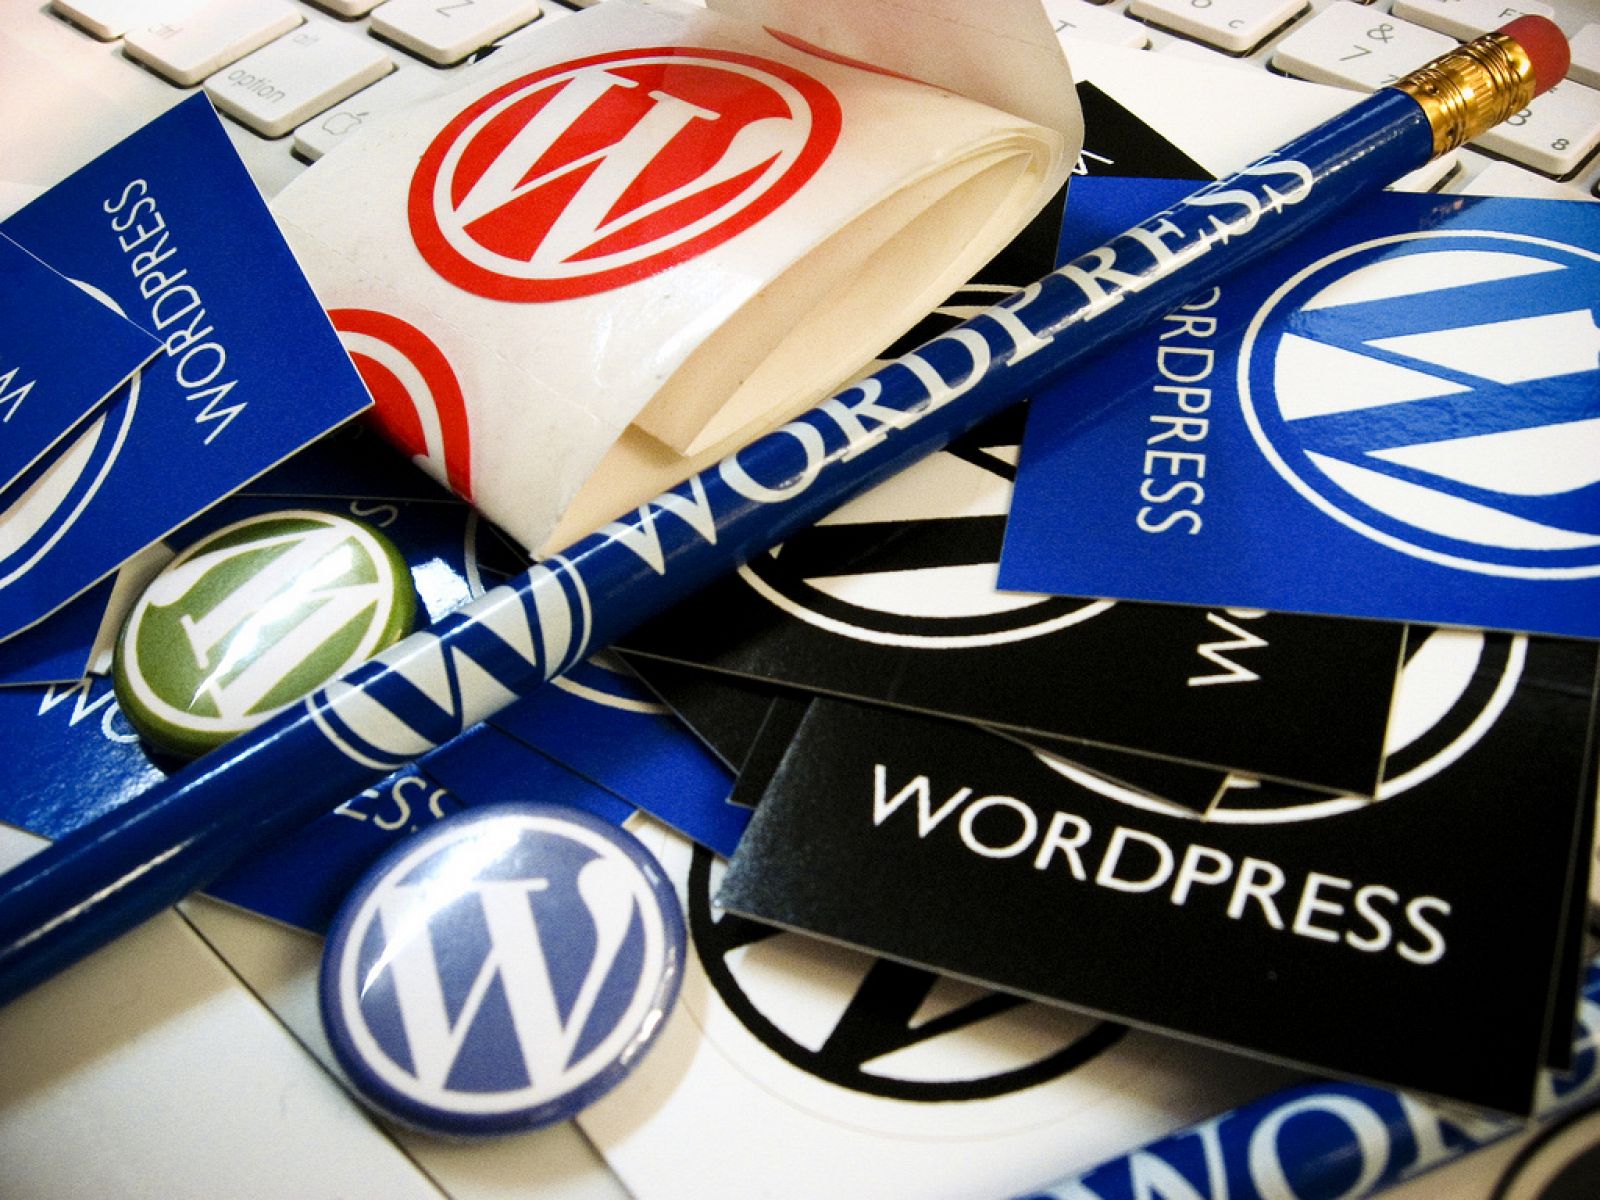 Wordpress ha sufrido el mayor ataque DdoS de su historia